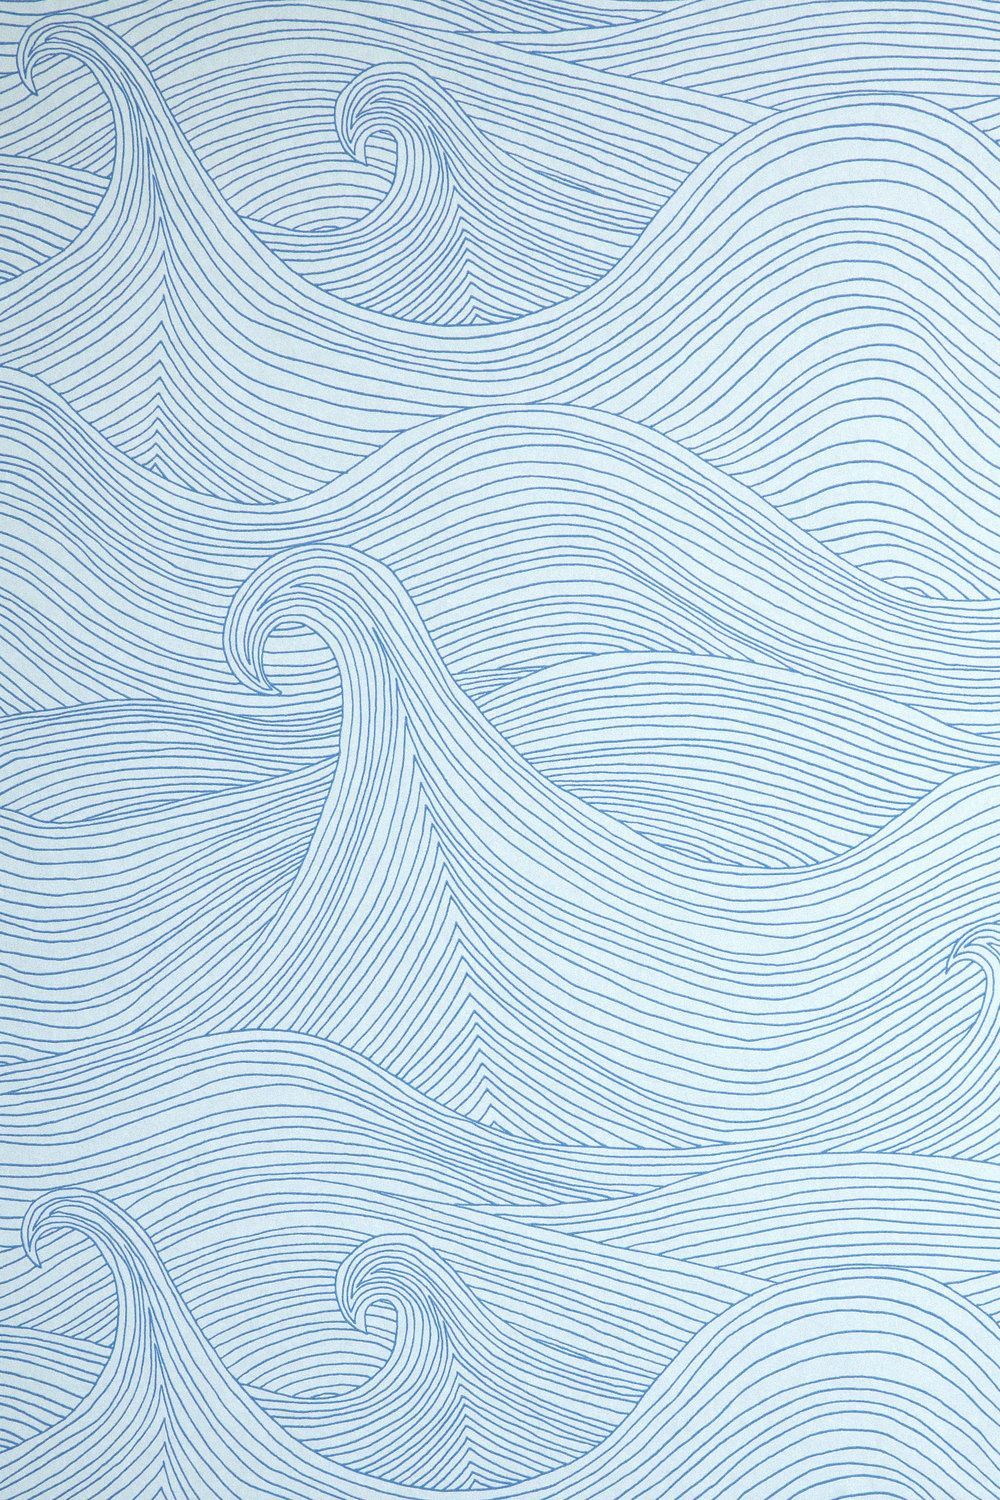 Seascape Wallpaper: Summer. Waves wallpaper, Ocean wallpaper